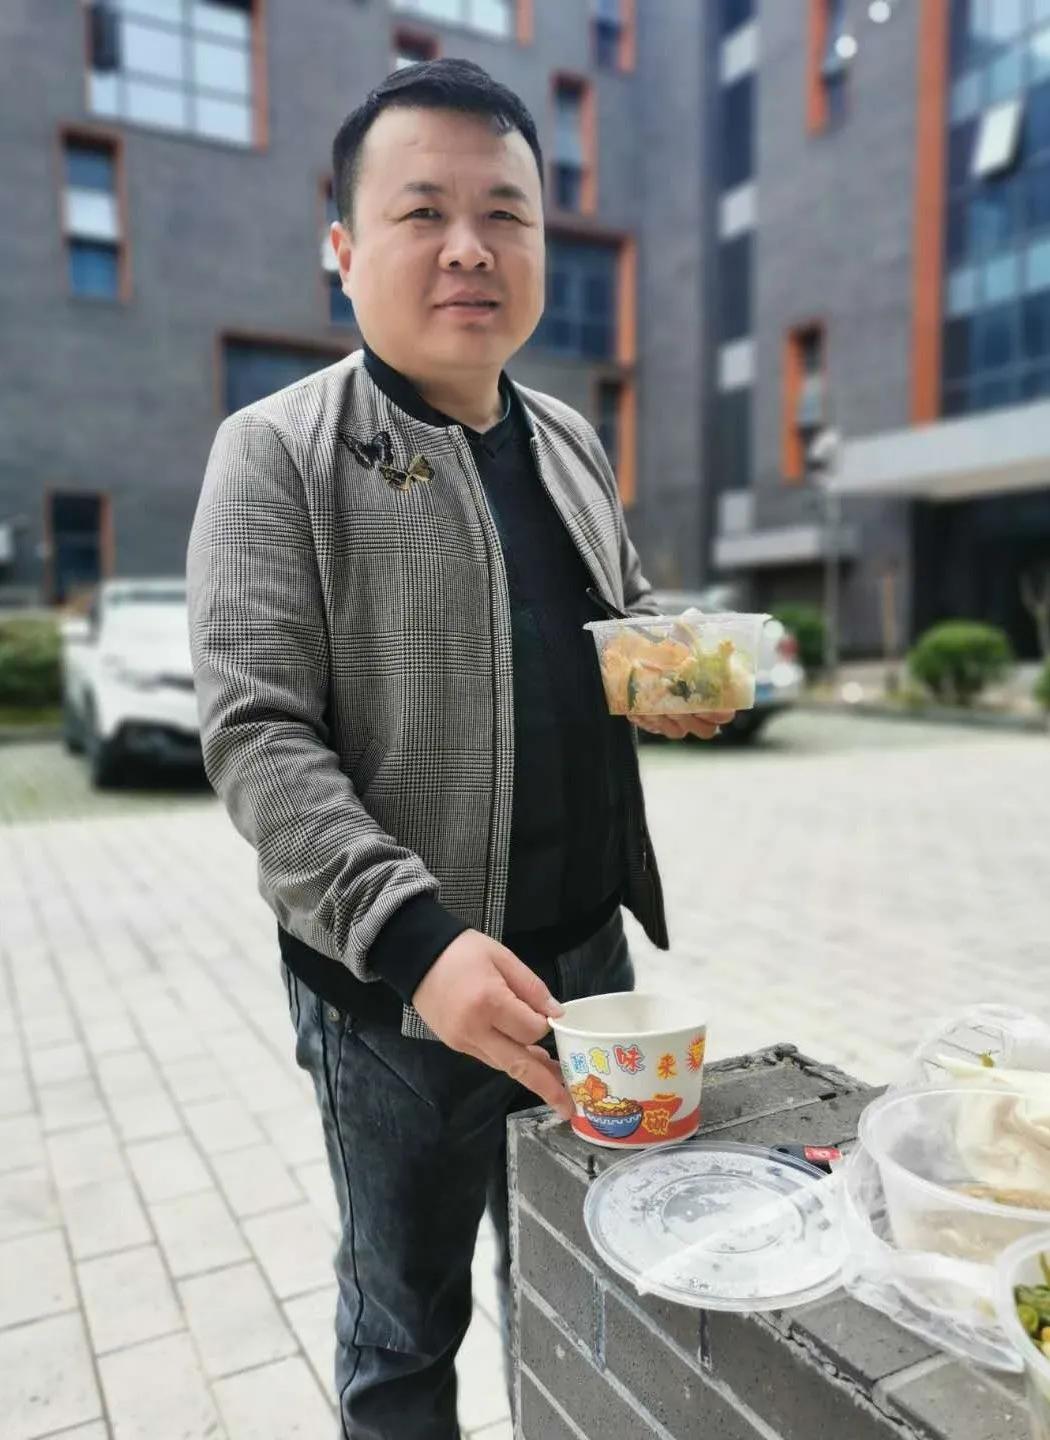 工作之余,江苏优网董事长张立旭先生也贴心的为大家准备了饮料及餐食